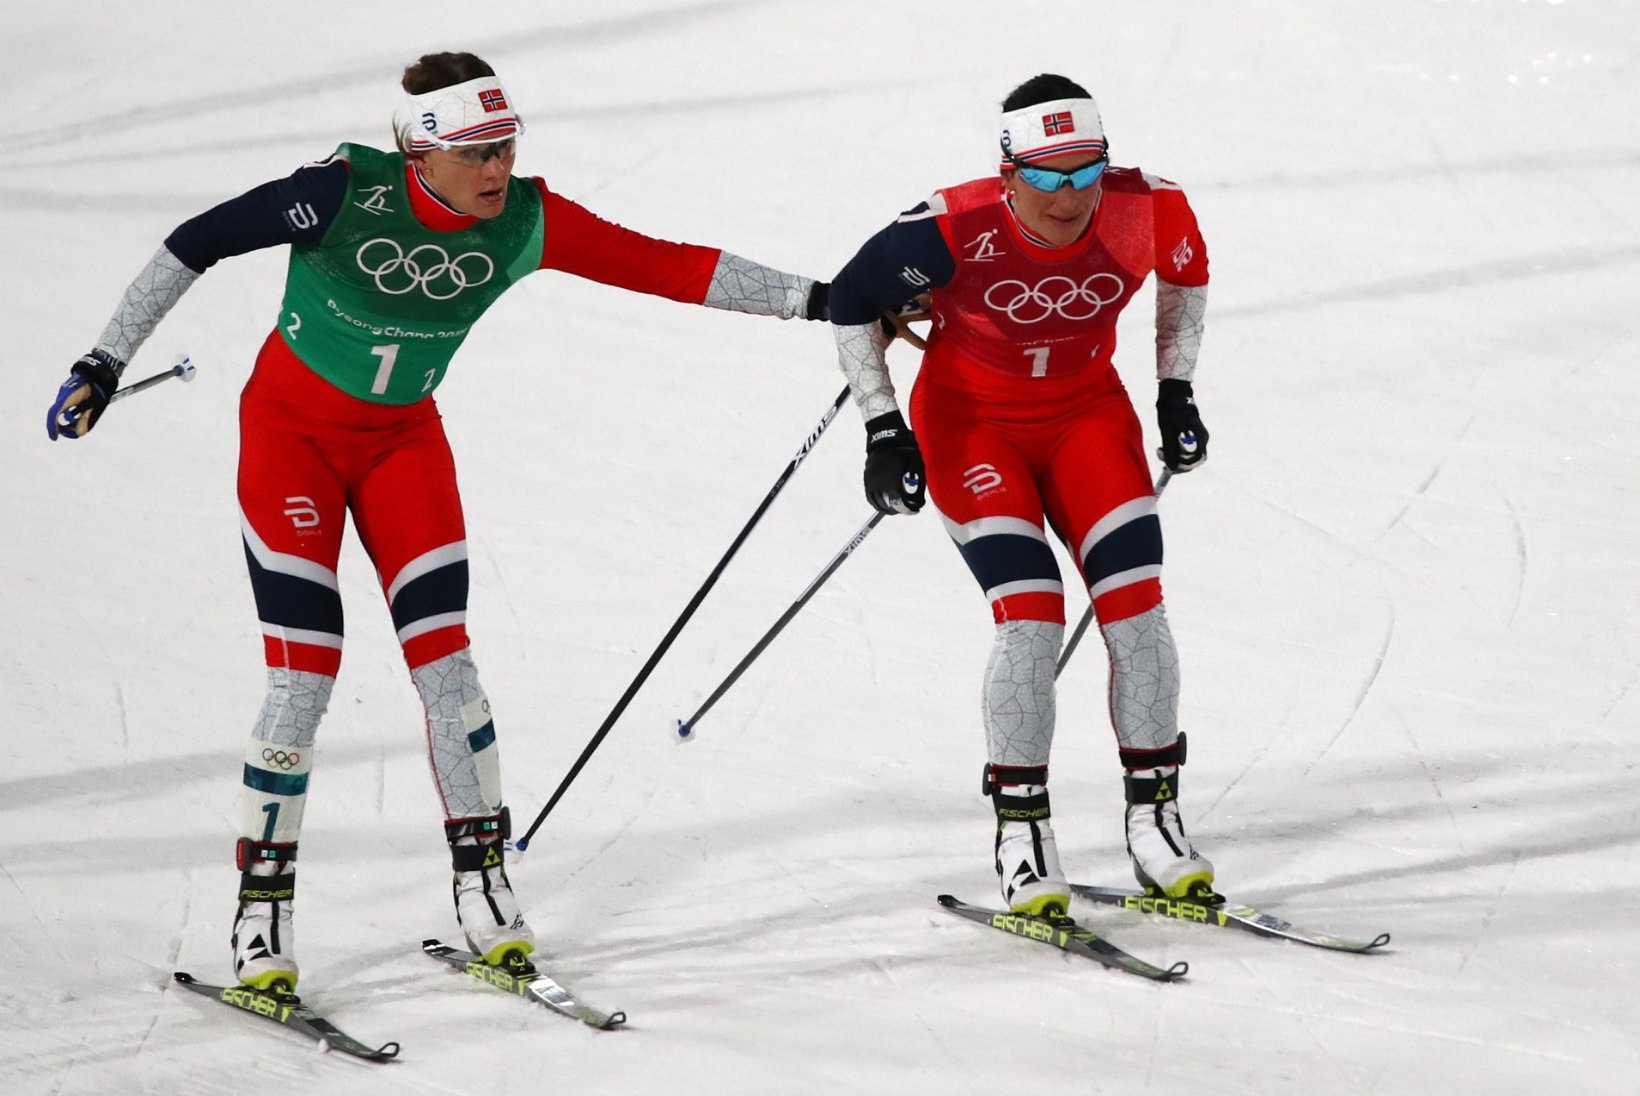 Ajalugu: Marit Björgenist sai esimene 14 olümpiamedalit võitnud talisportlane